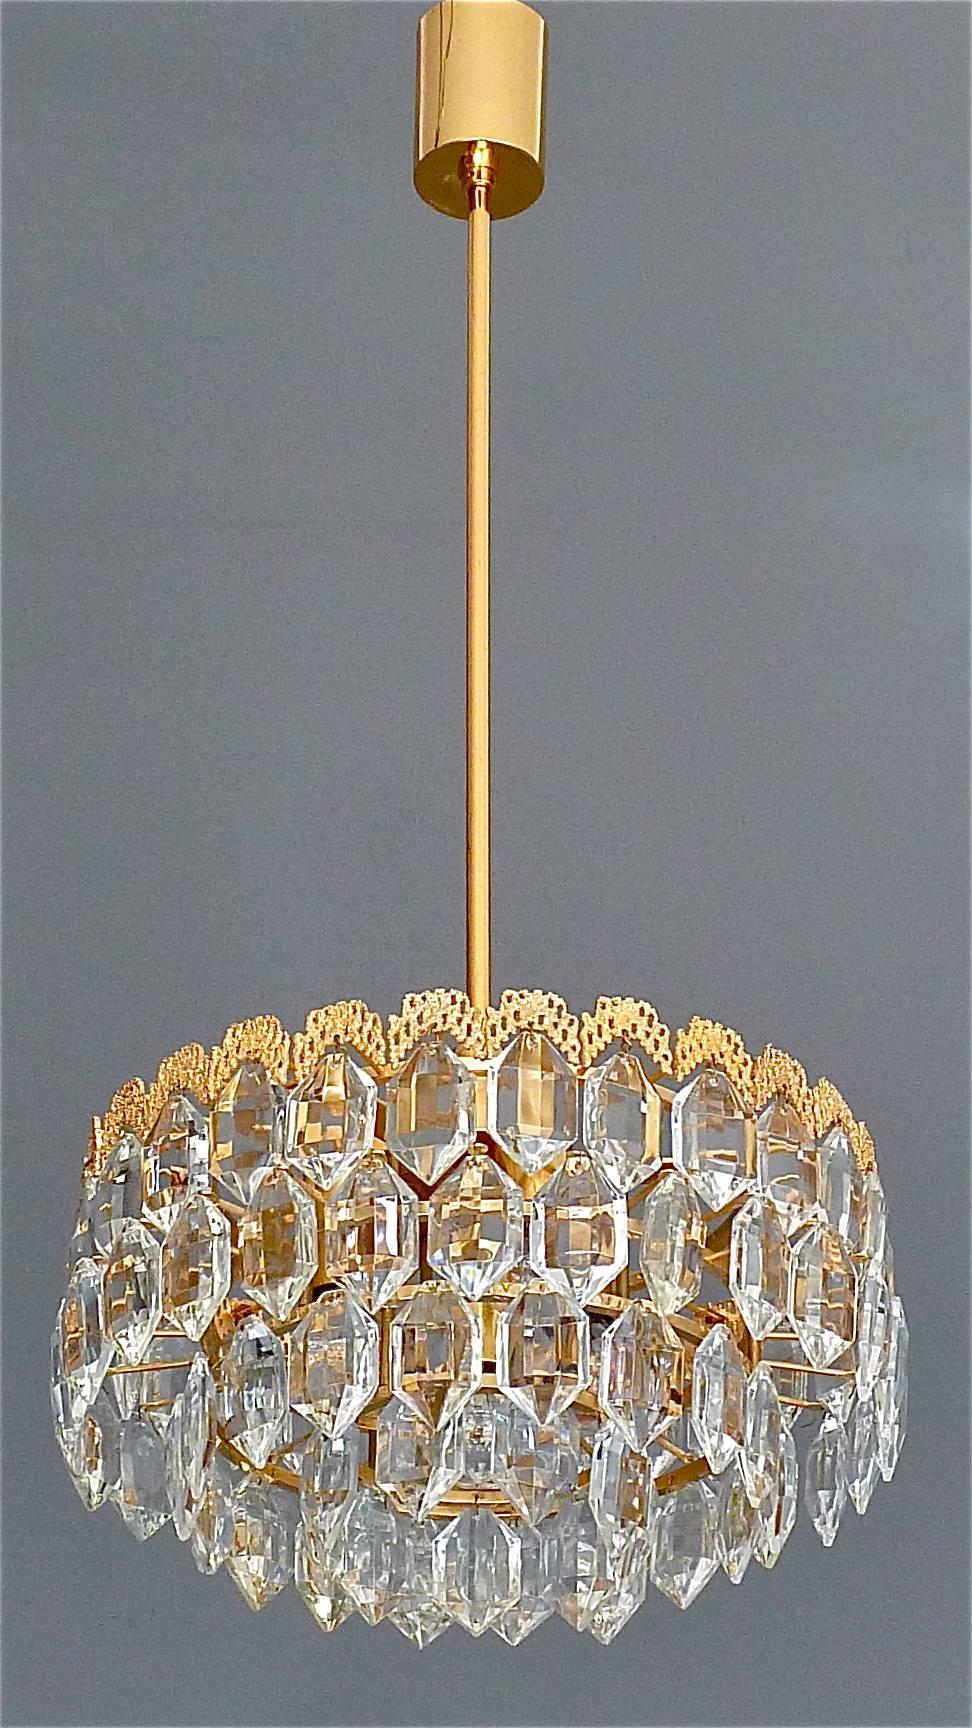 Edler Kronleuchter aus vergoldetem Messing und Kristallglas, hergestellt von der berühmten Firma Bakalowits, Österreich, ca. 1960er Jahre. Die Deckenhalterung und der Rahmen sind aus vergoldetem Messing mit einer wunderschönen vergoldeten Verzierung